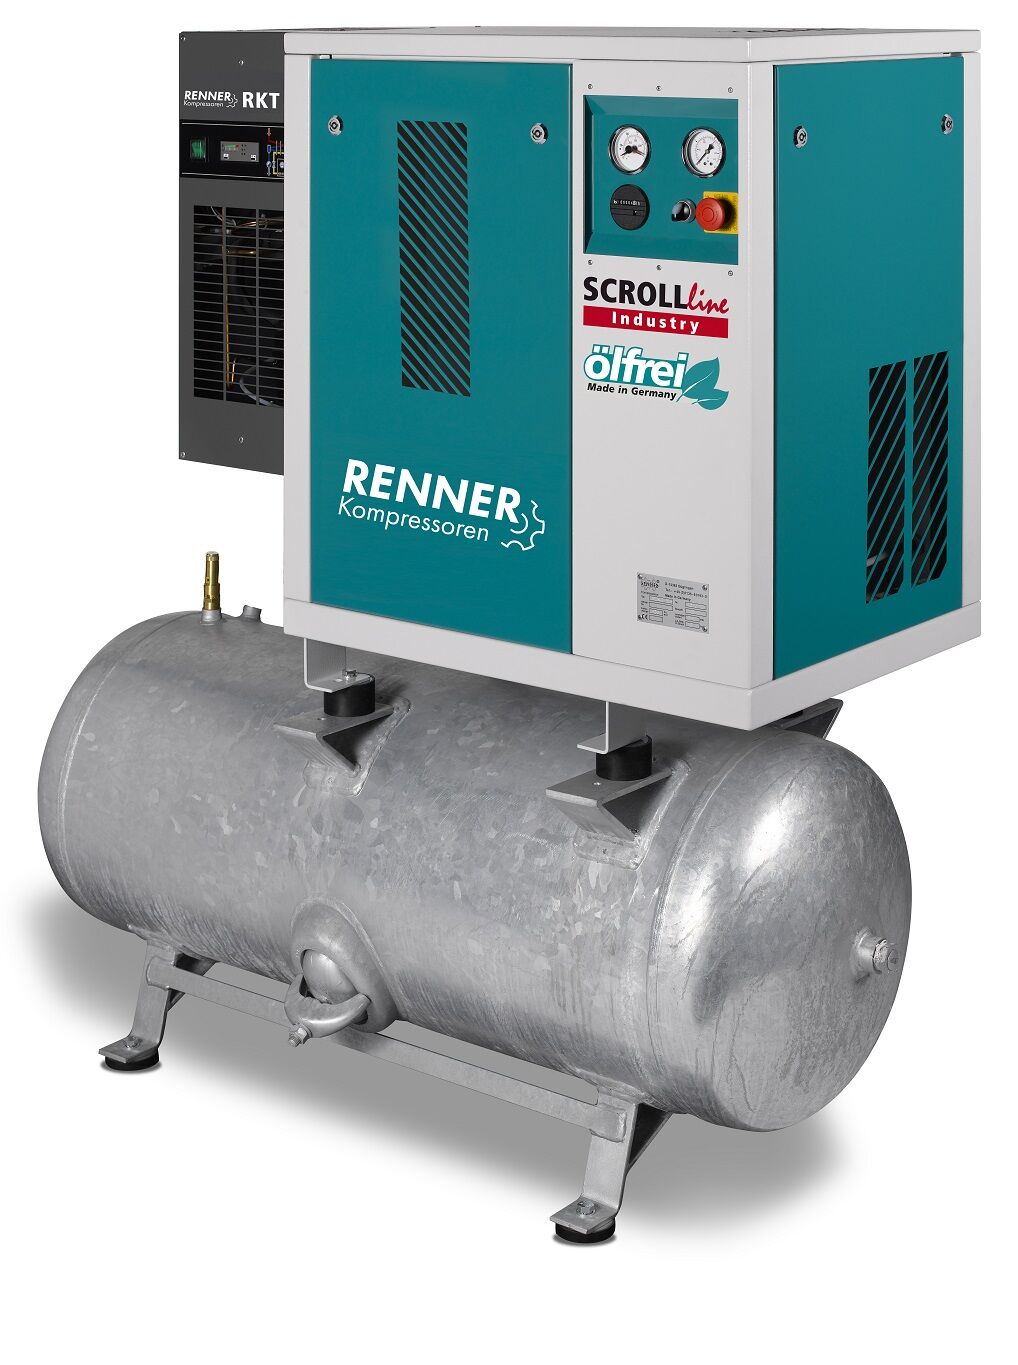 RENNER-Scrollkompr. Industry ölfrei - SLDK-I 1,5 auf 250 Liter Druckbehälter mit Kältetrockner